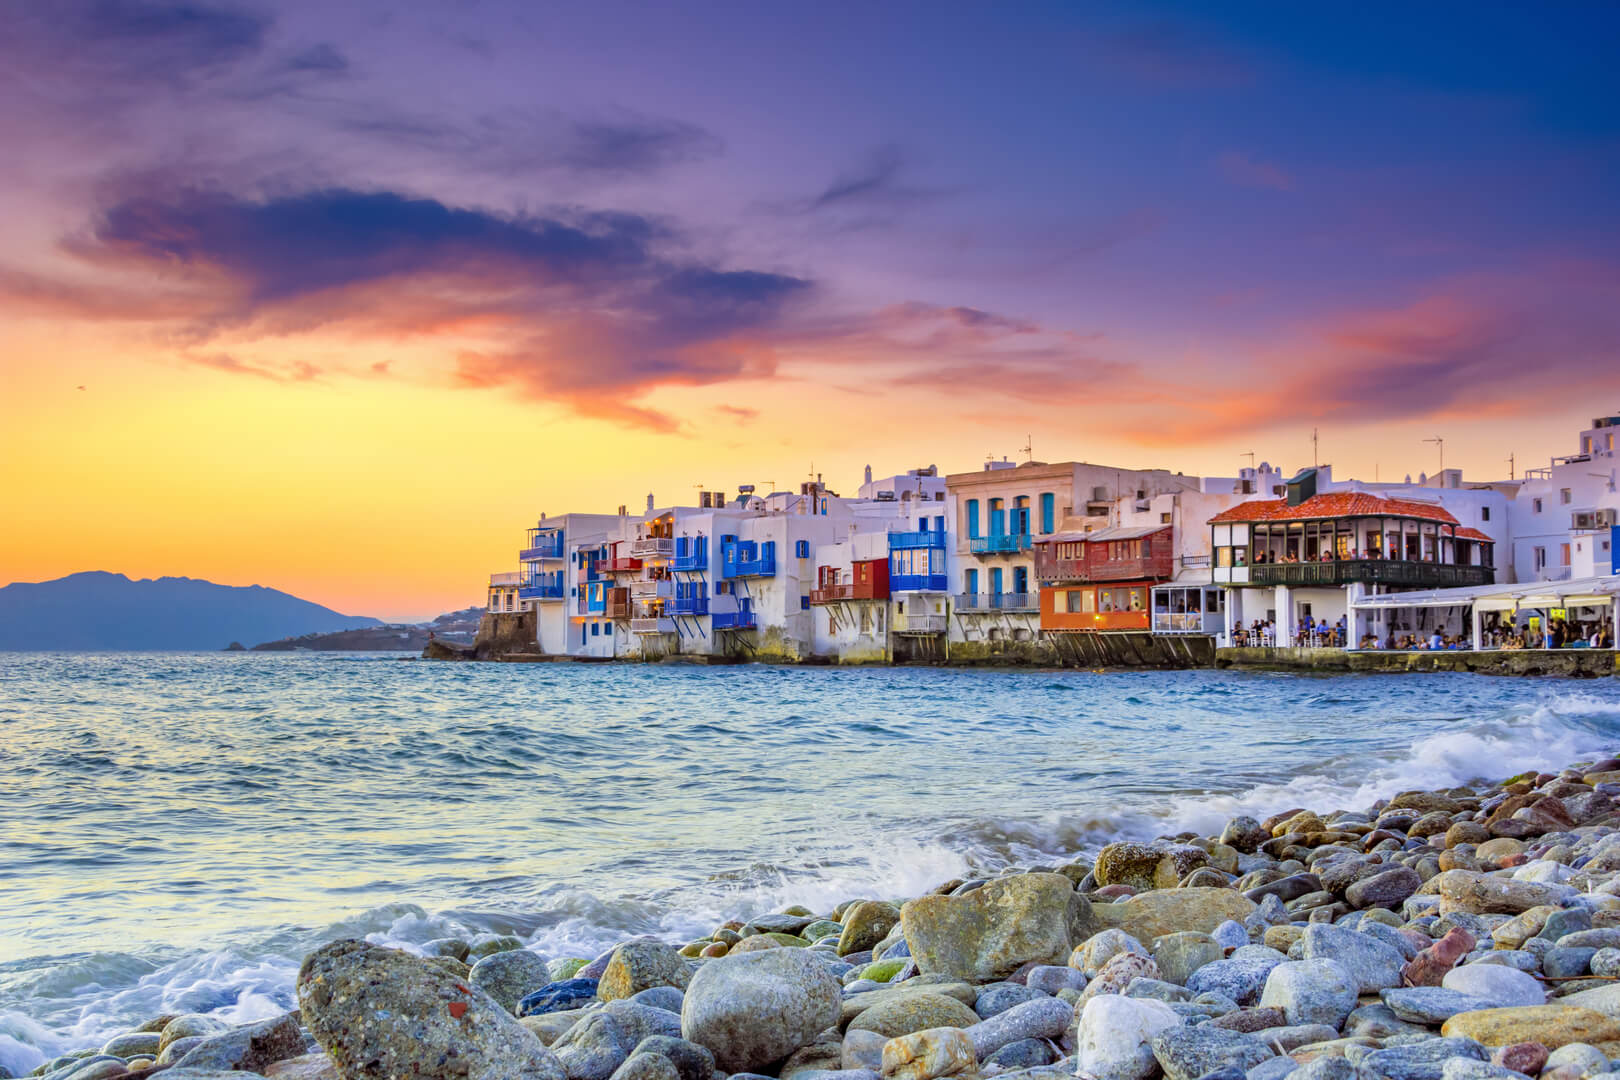 Vista della famosa baia pittorica della Piccola Venezia della città di Mykonos nell'isola di Mykonos in Grecia
